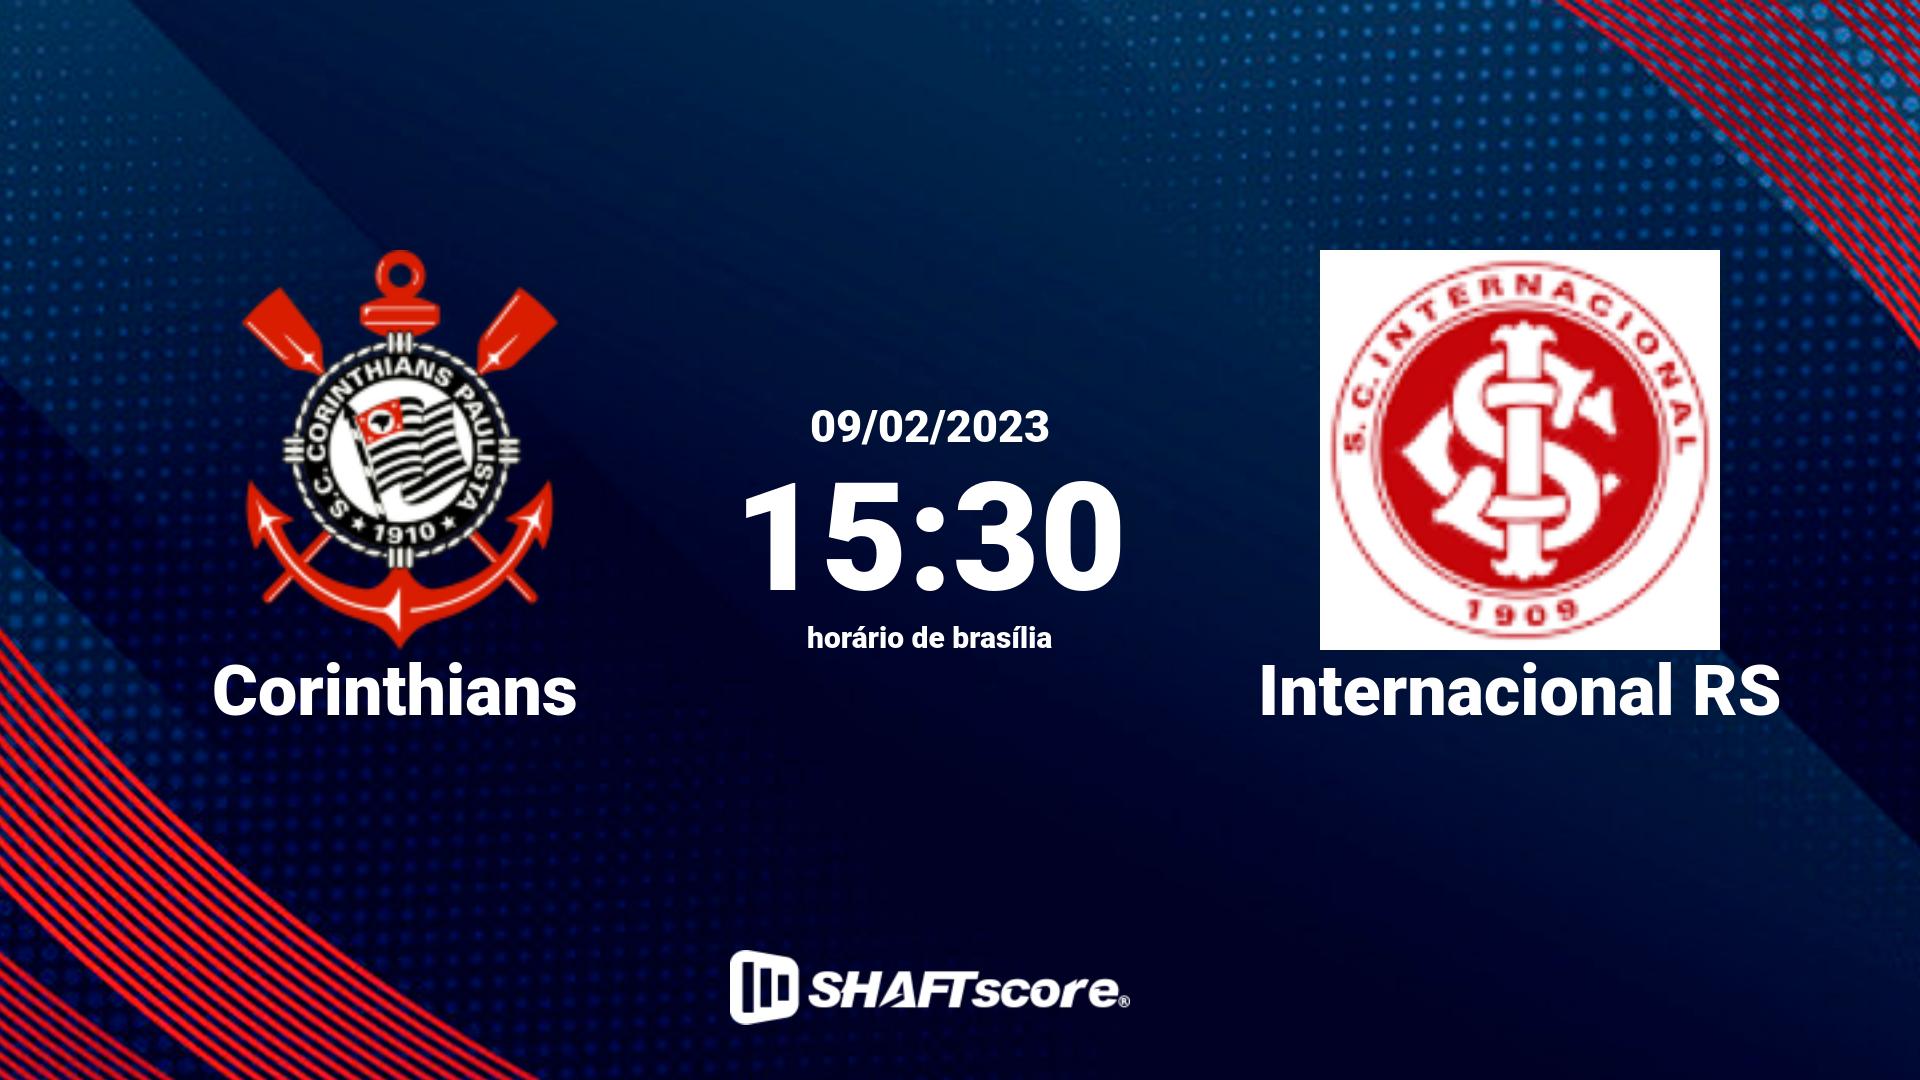 Estatísticas do jogo Corinthians vs Internacional RS 09.02 15:30